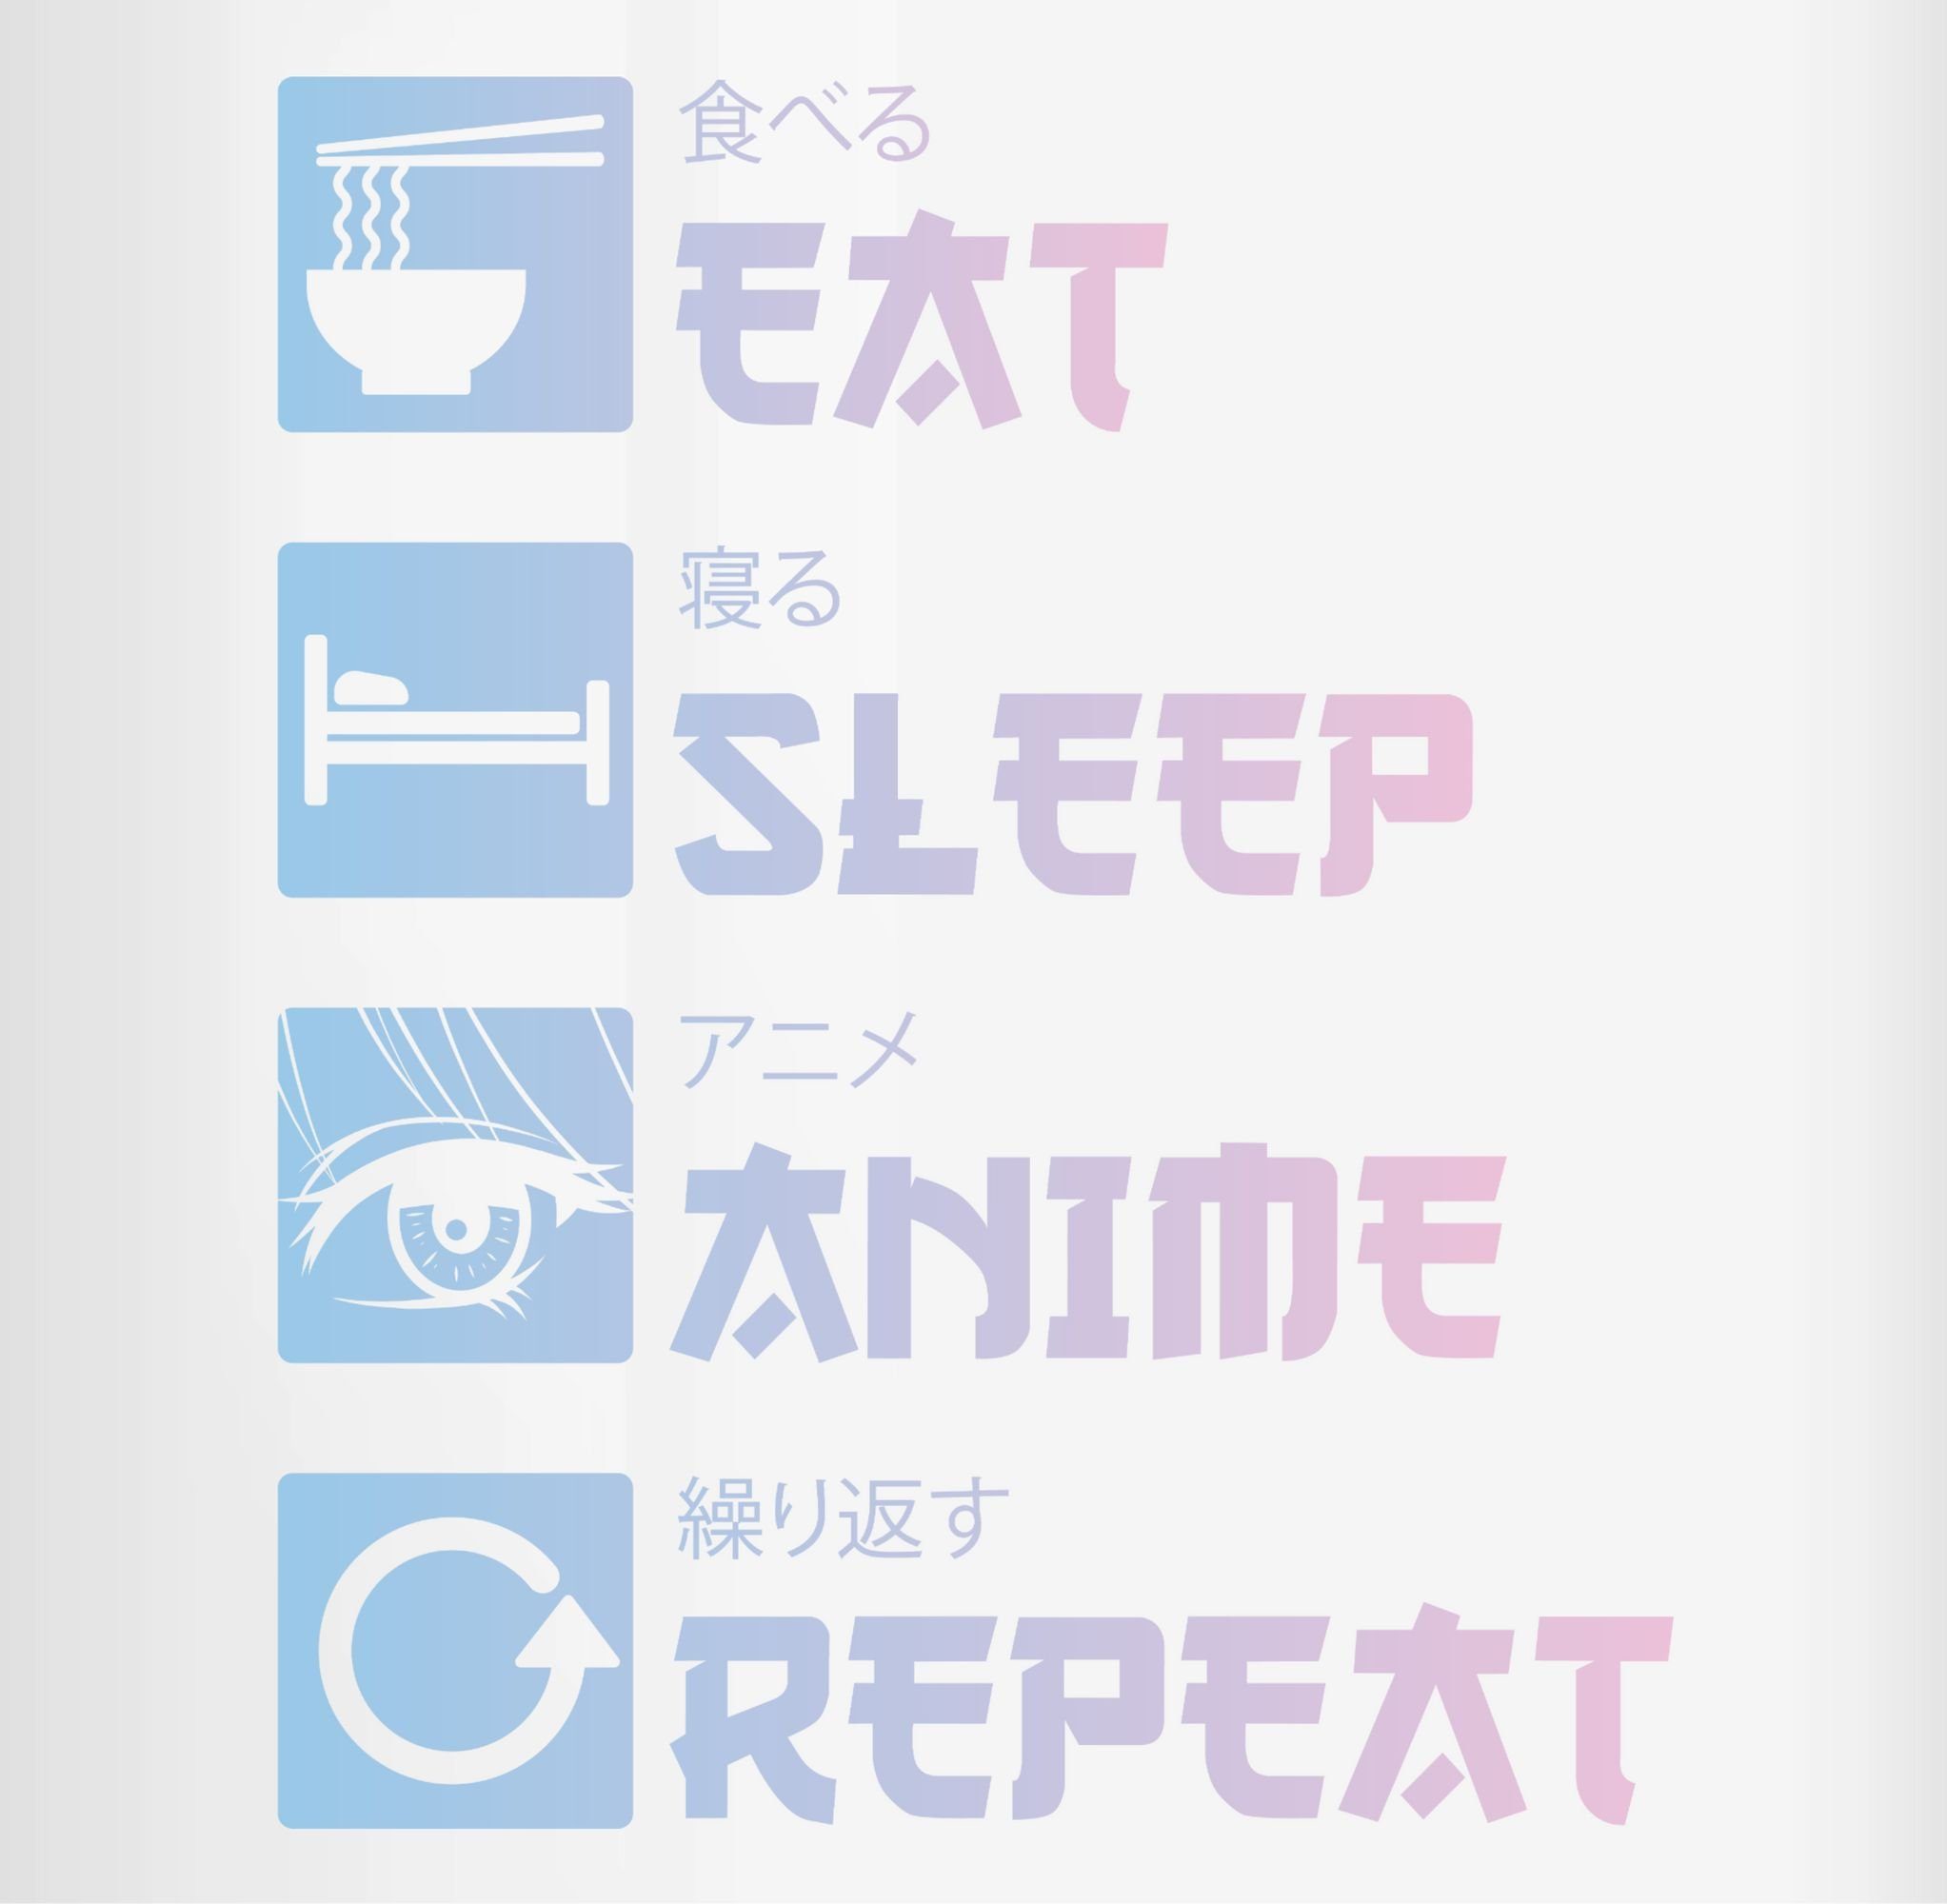 Shirtracer Tasse Eat Sleep 1 Bordeauxrot - Anime Merch Kaffeetasse Anime Manga, Keramik, Repeat